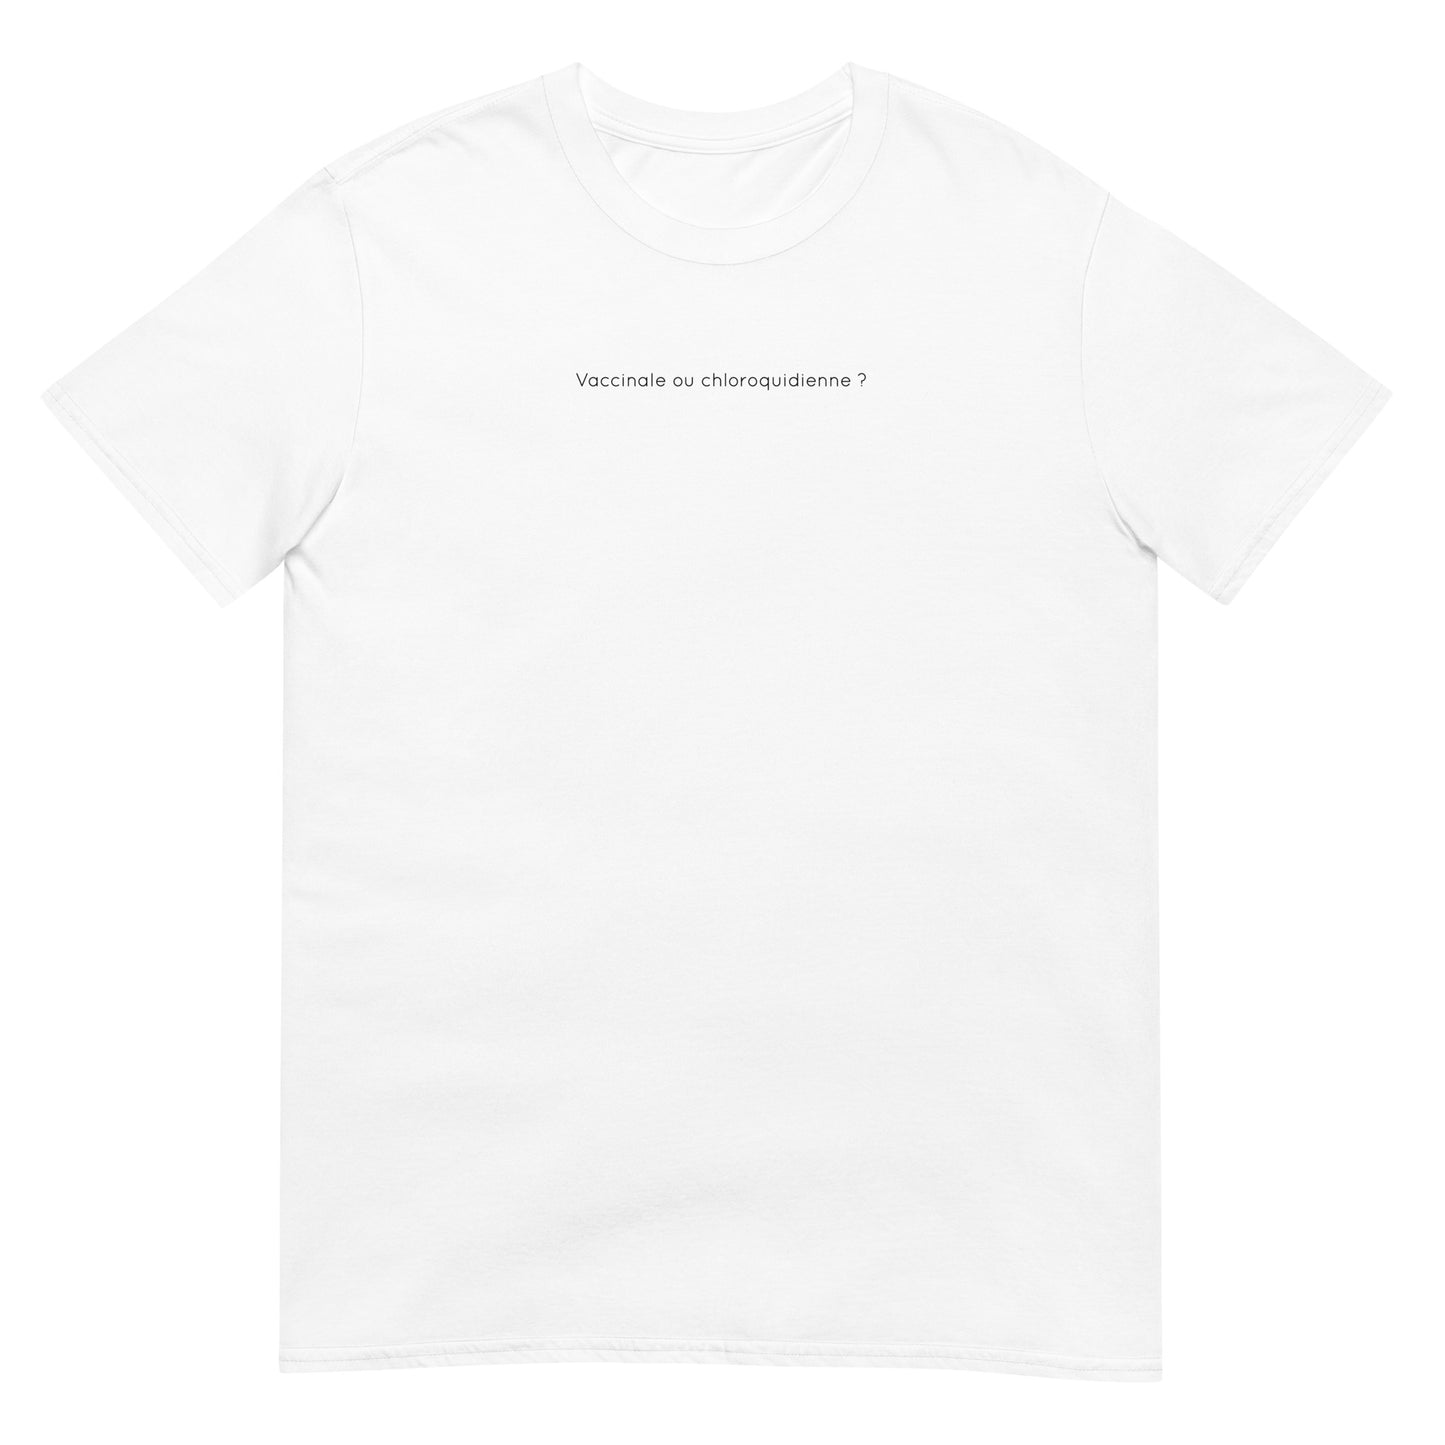 T-shirt unisexe Vaccinale ou chloroquidienne - Sedurro